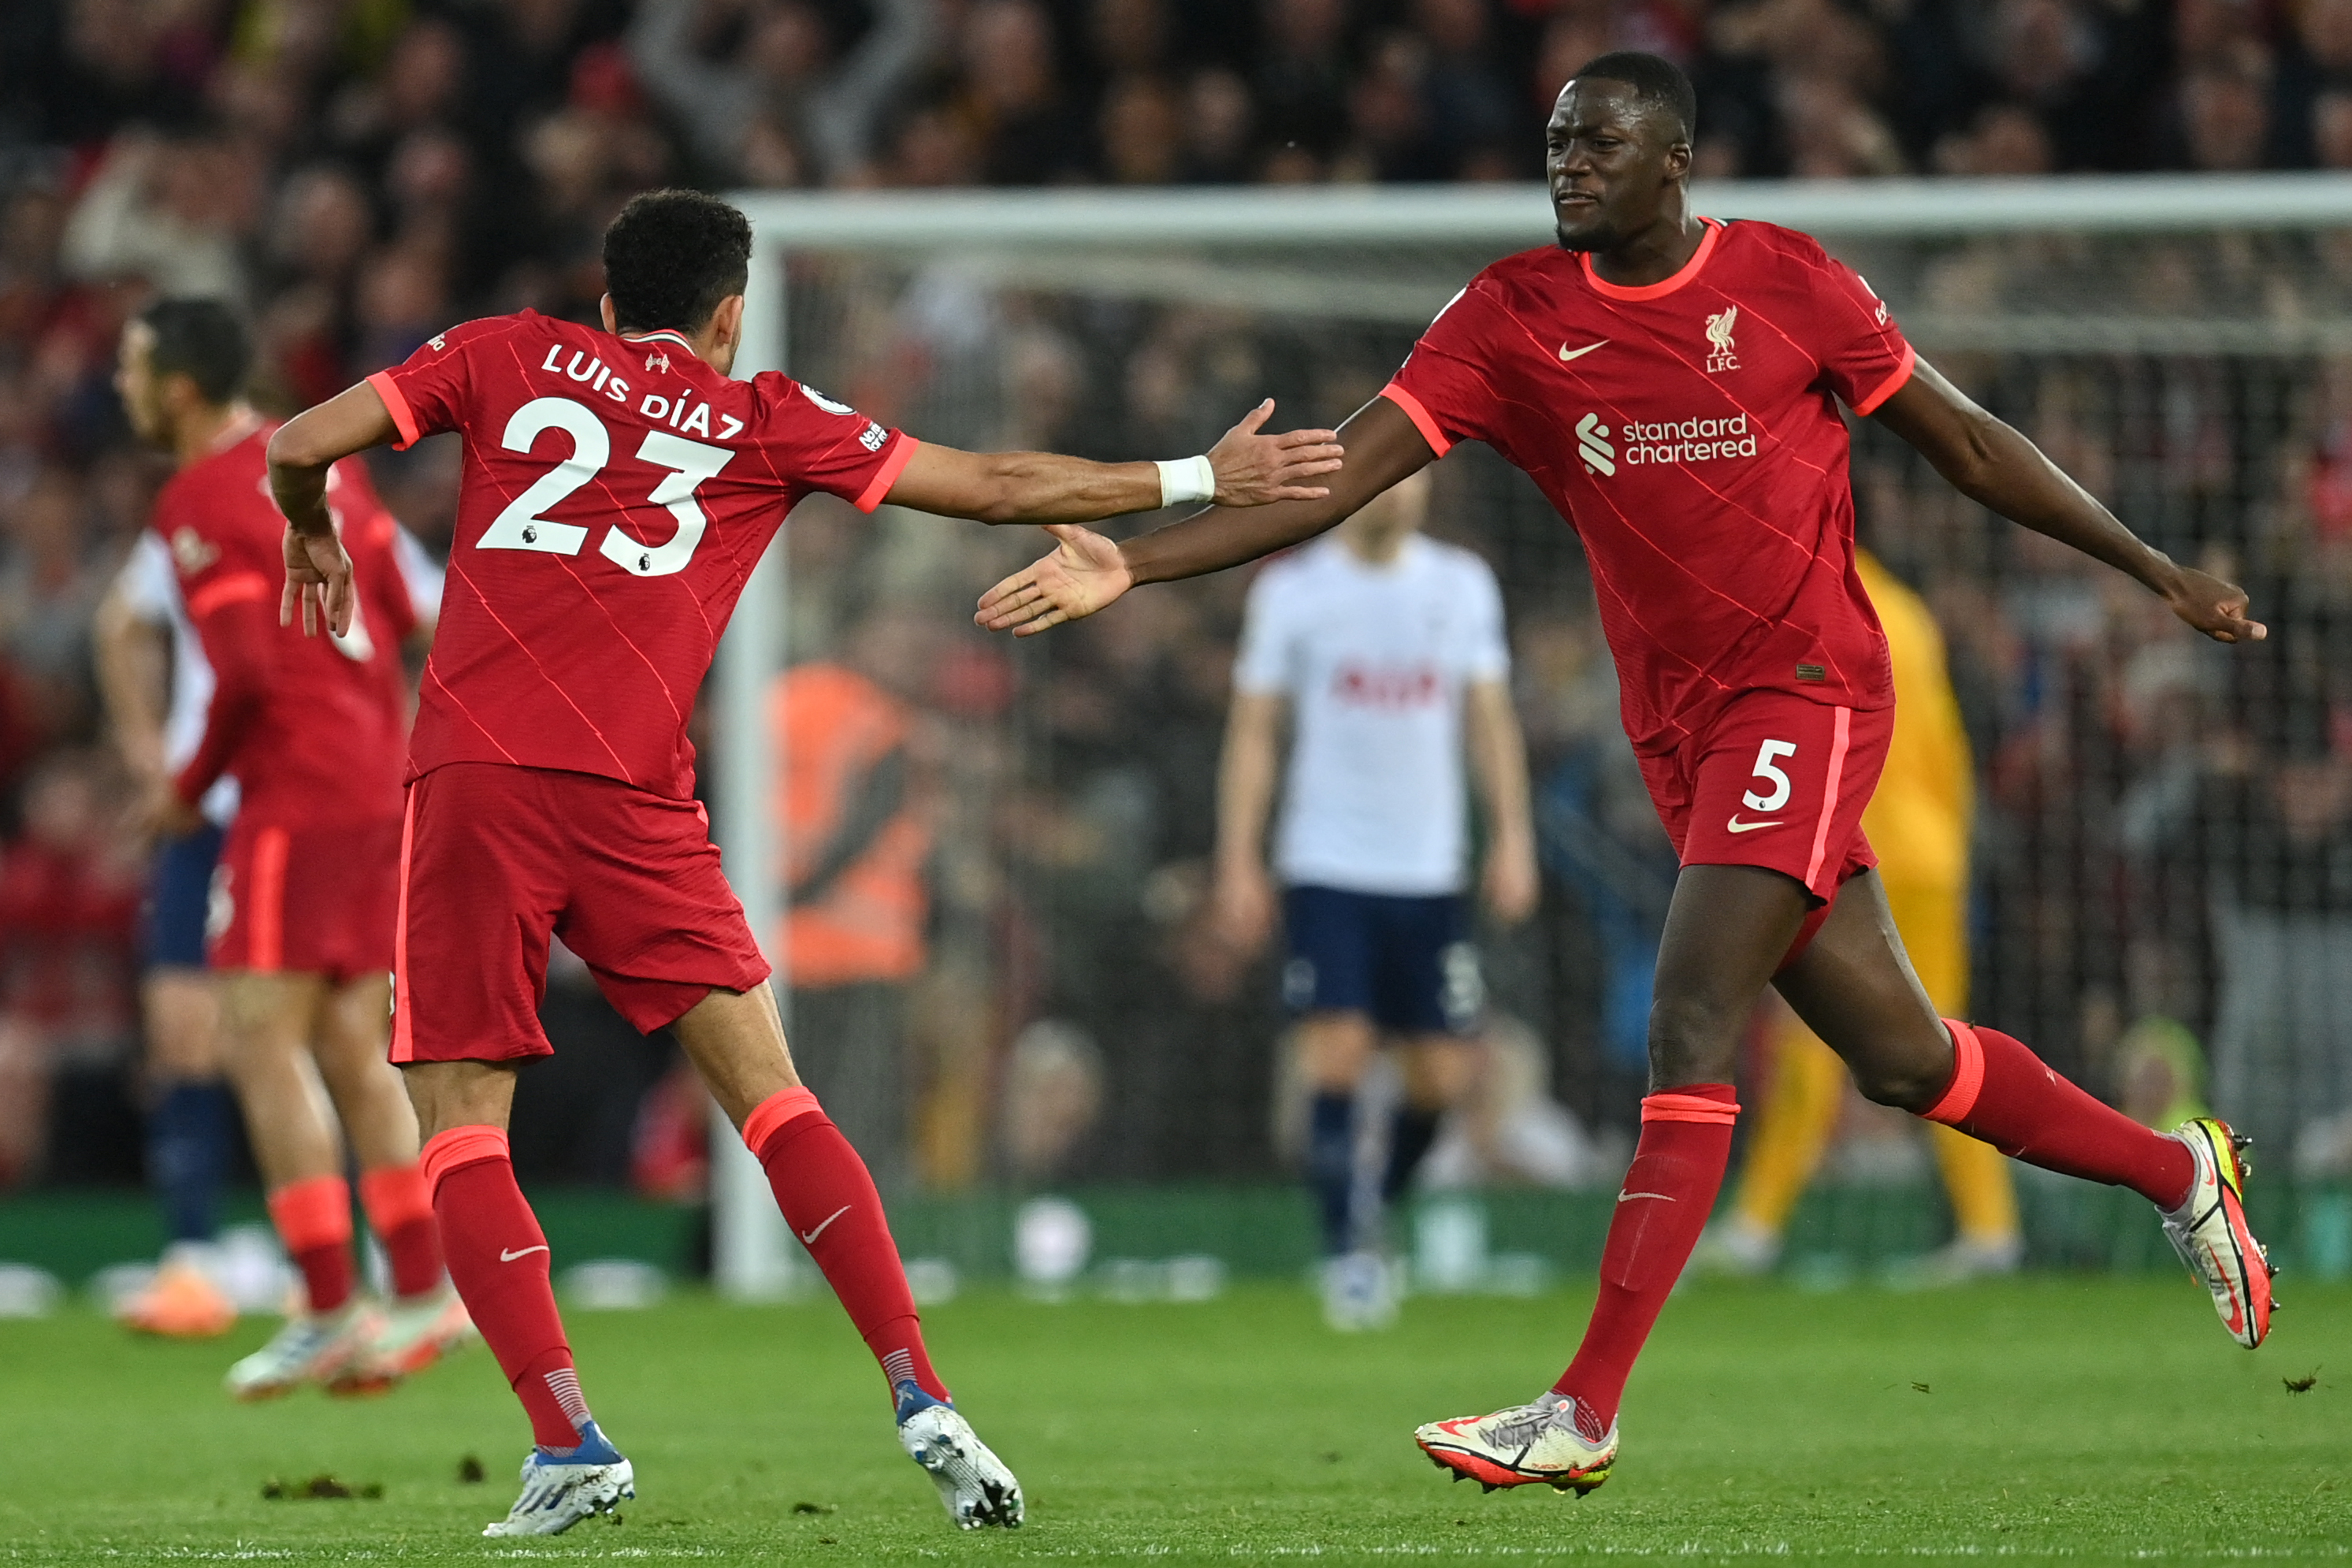 Premier League: Liverpool lead Premier League title race despite dropping crucial points, Liverpool draw 1-1 against Tottenham Hotspur: Watch Liverpool vs Spurs HIGHLIGHTS